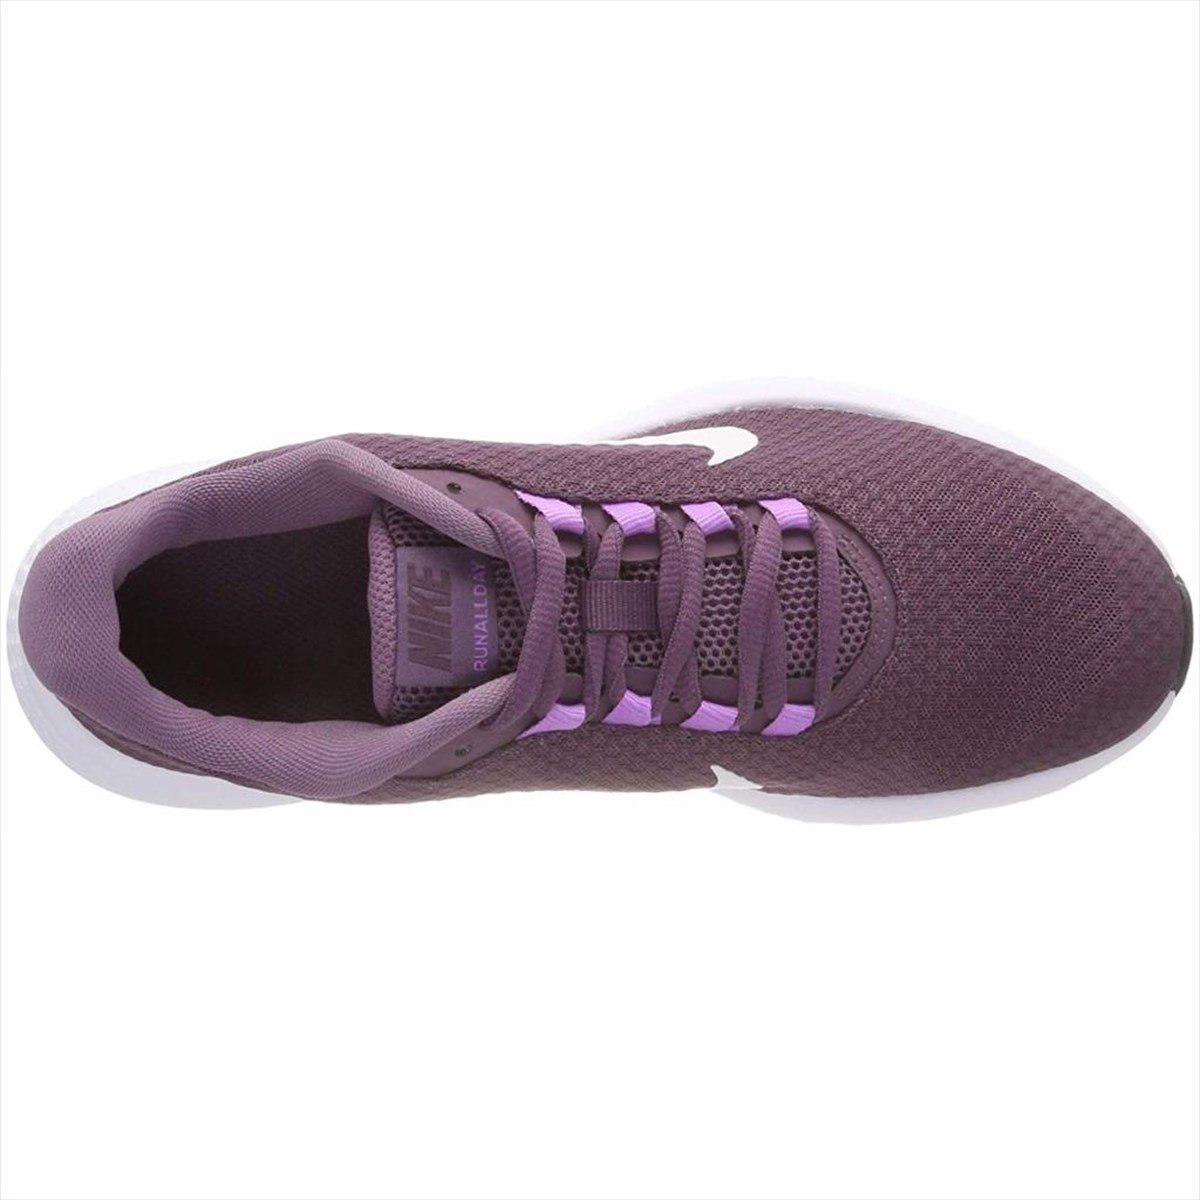 Nike 898484-500 Wmns Runallday Kadın Spor Ayakkabısı | Sporactive